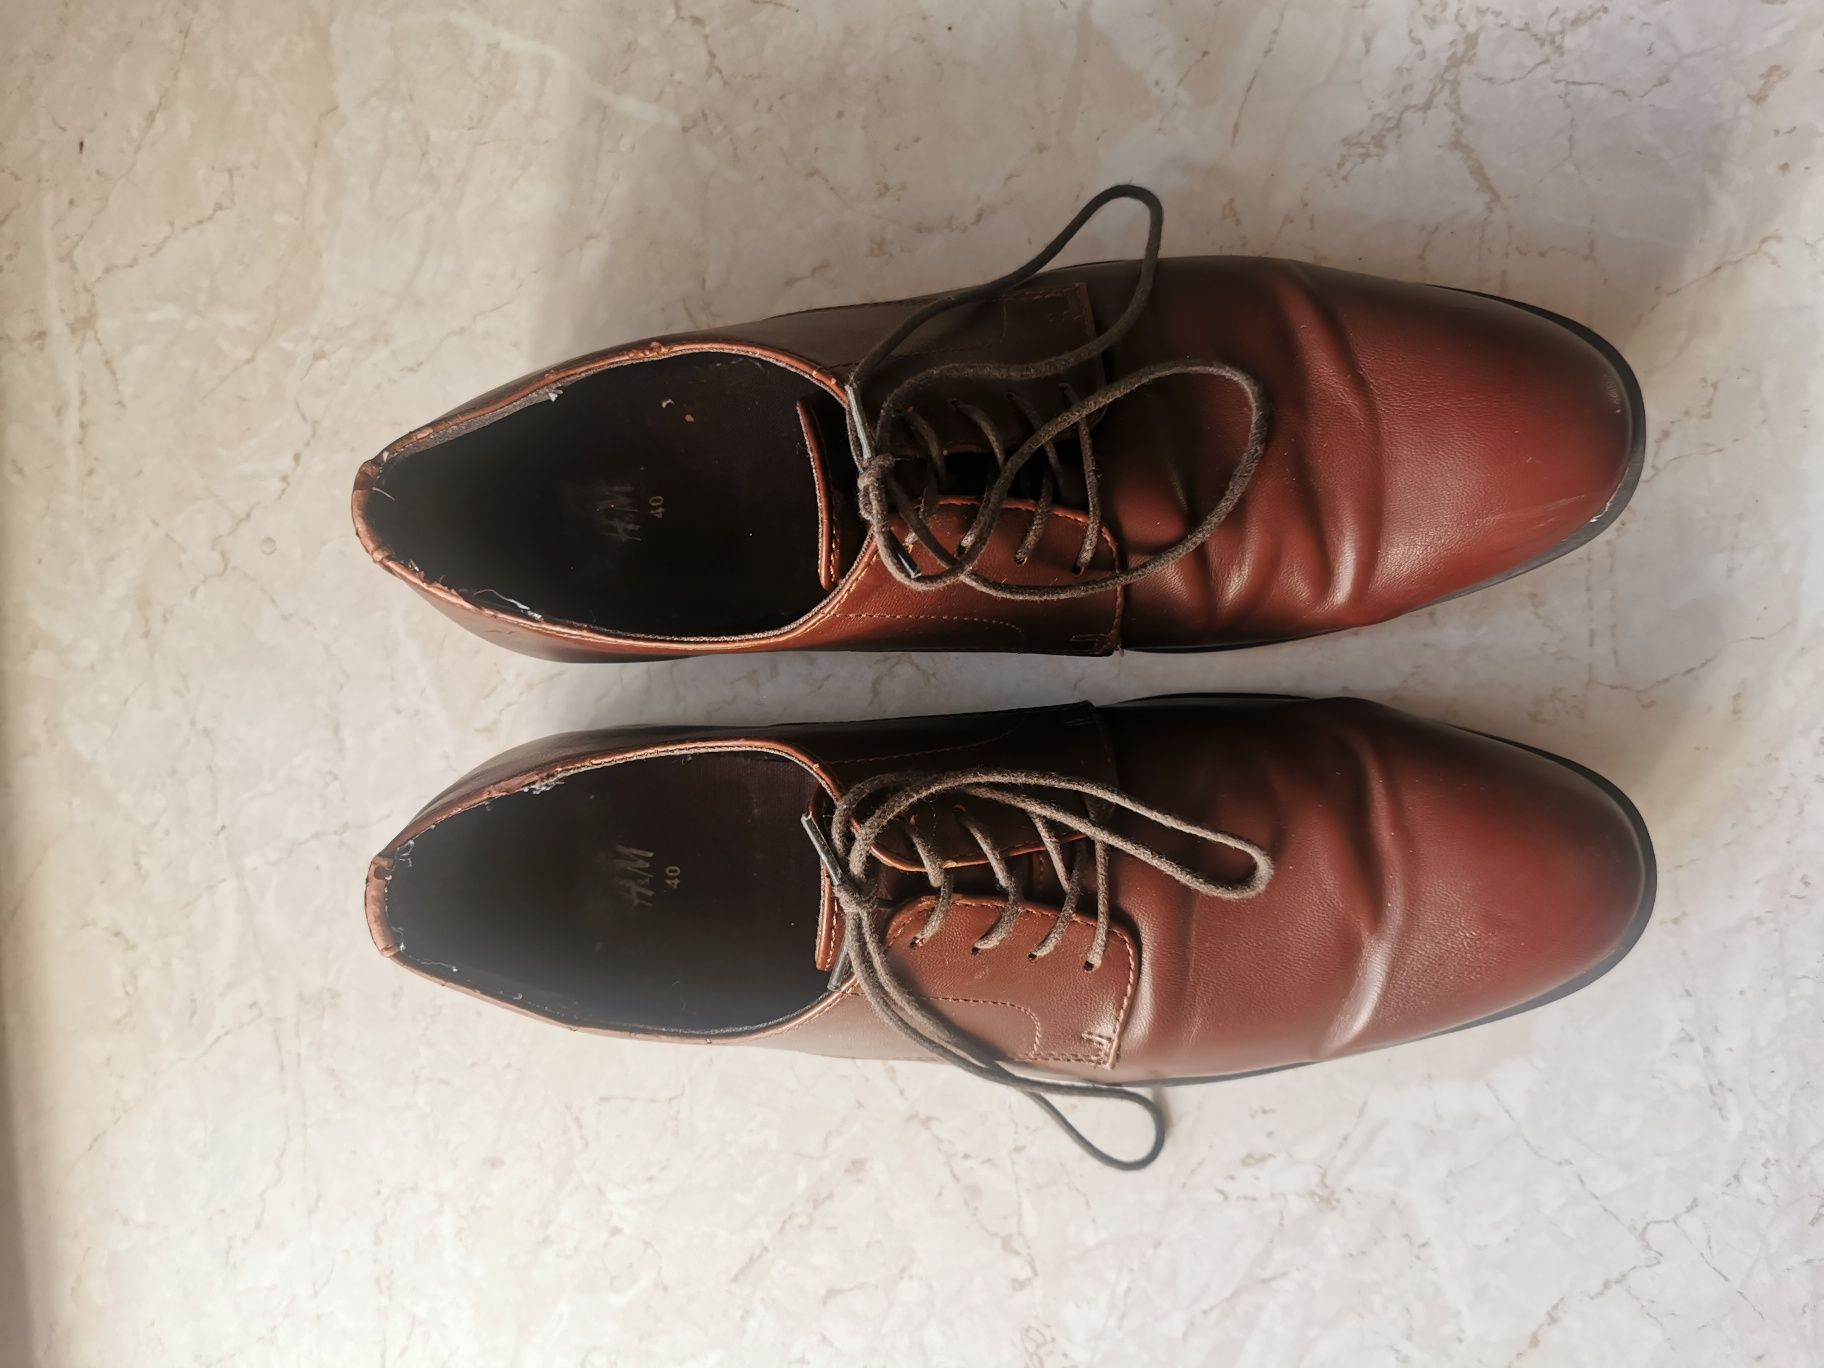 Pantofle MĘSKIE H&M rozm 40 TANIO